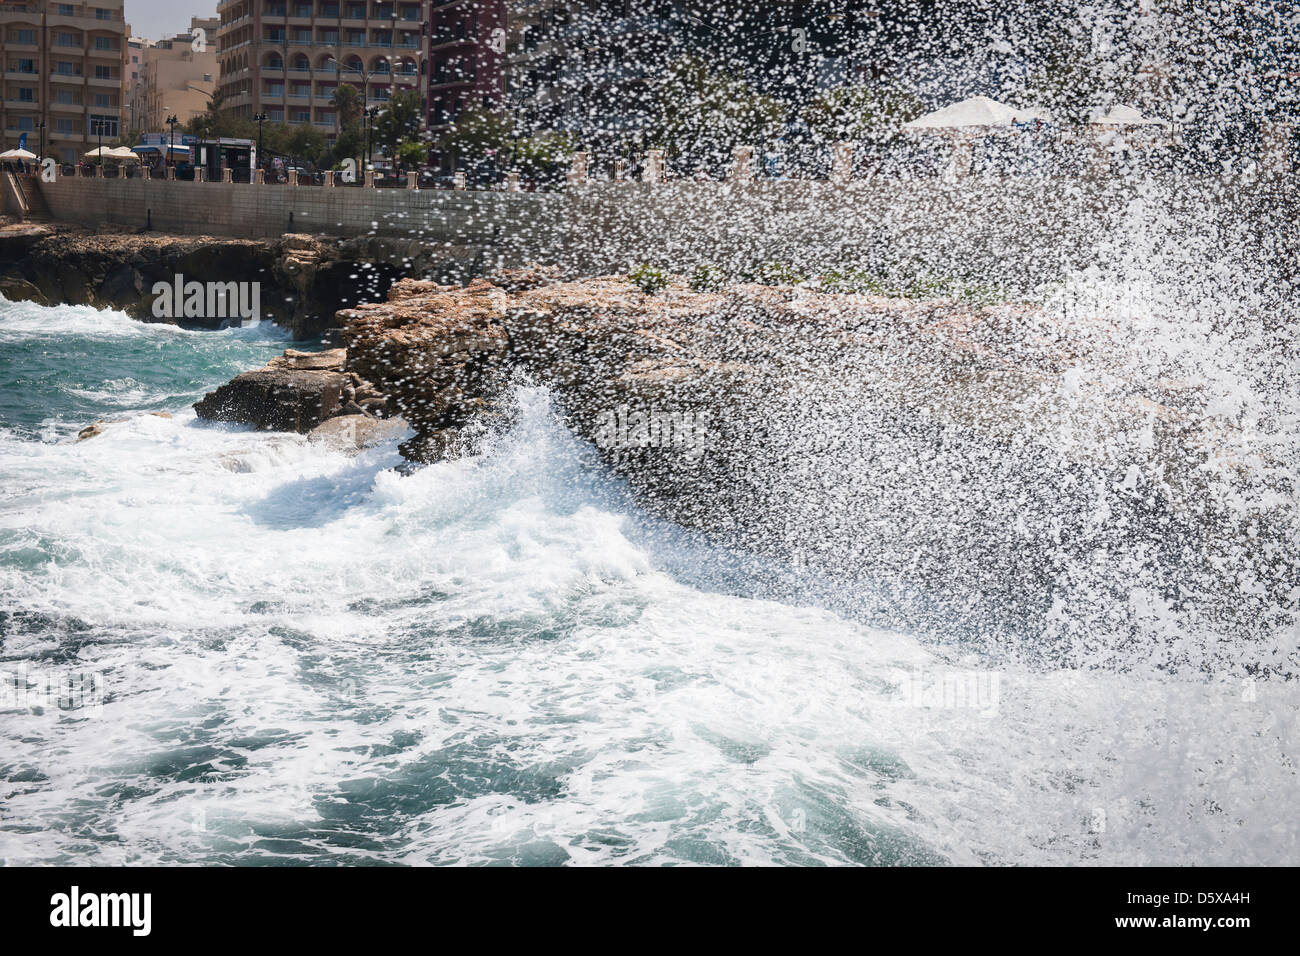 Les vagues déferlent sur le rivage, Sliema, Malte Banque D'Images